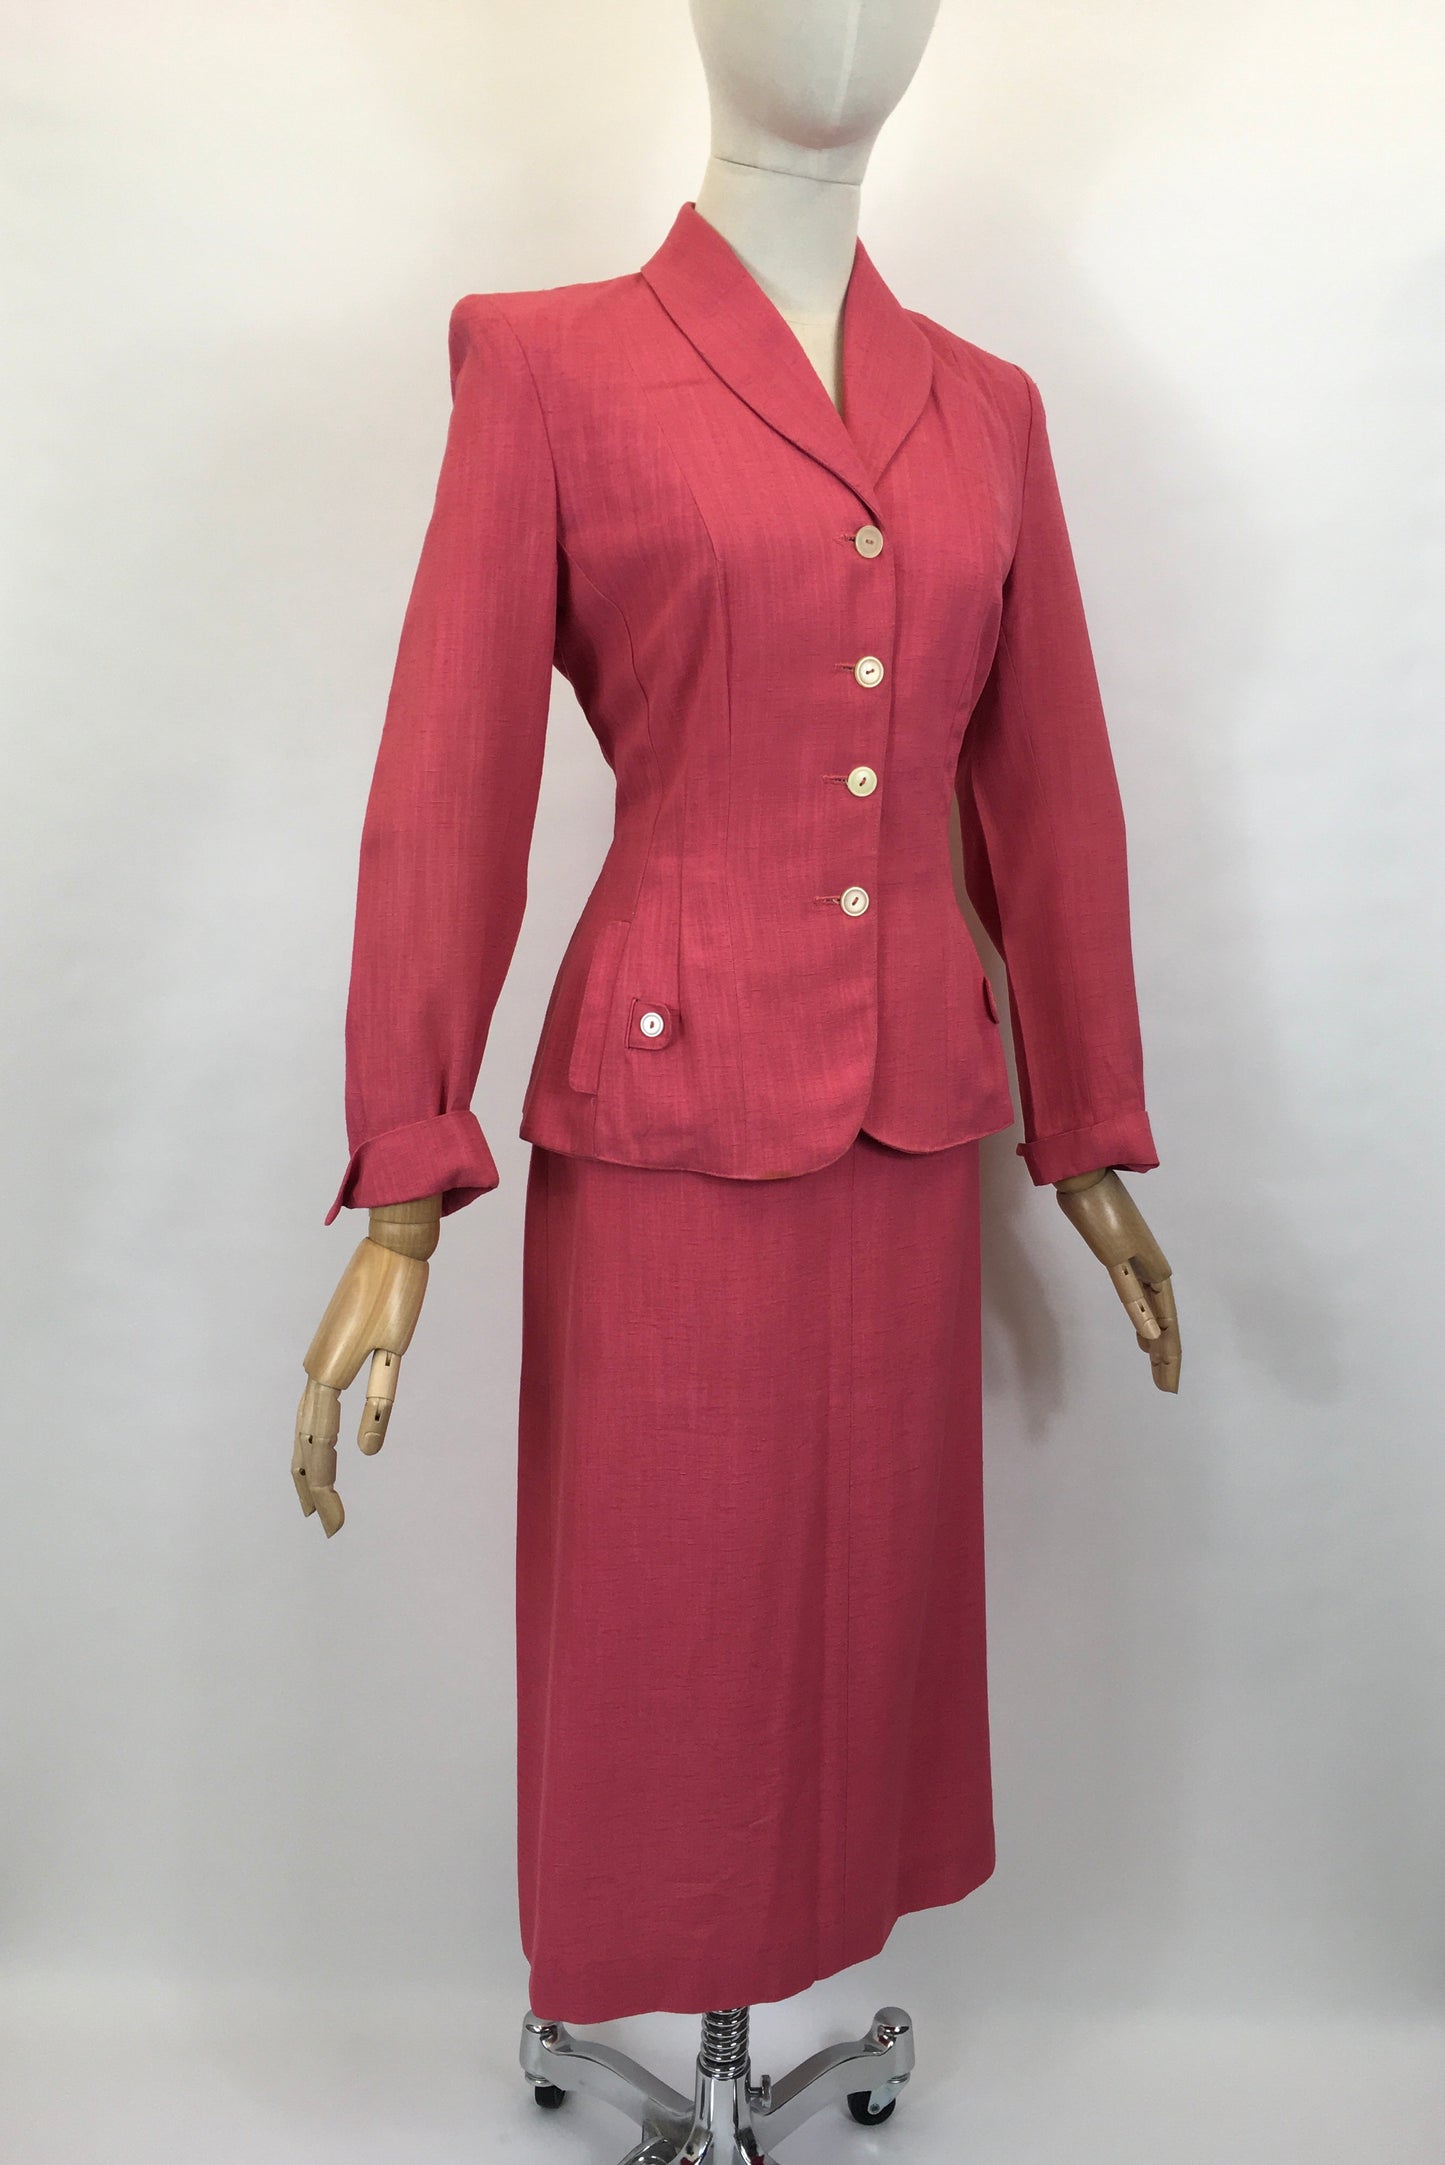 Original 1940’s Fabulous Bubblegum Pink 2pc Suit - In A Gorgeous Linen Fabric